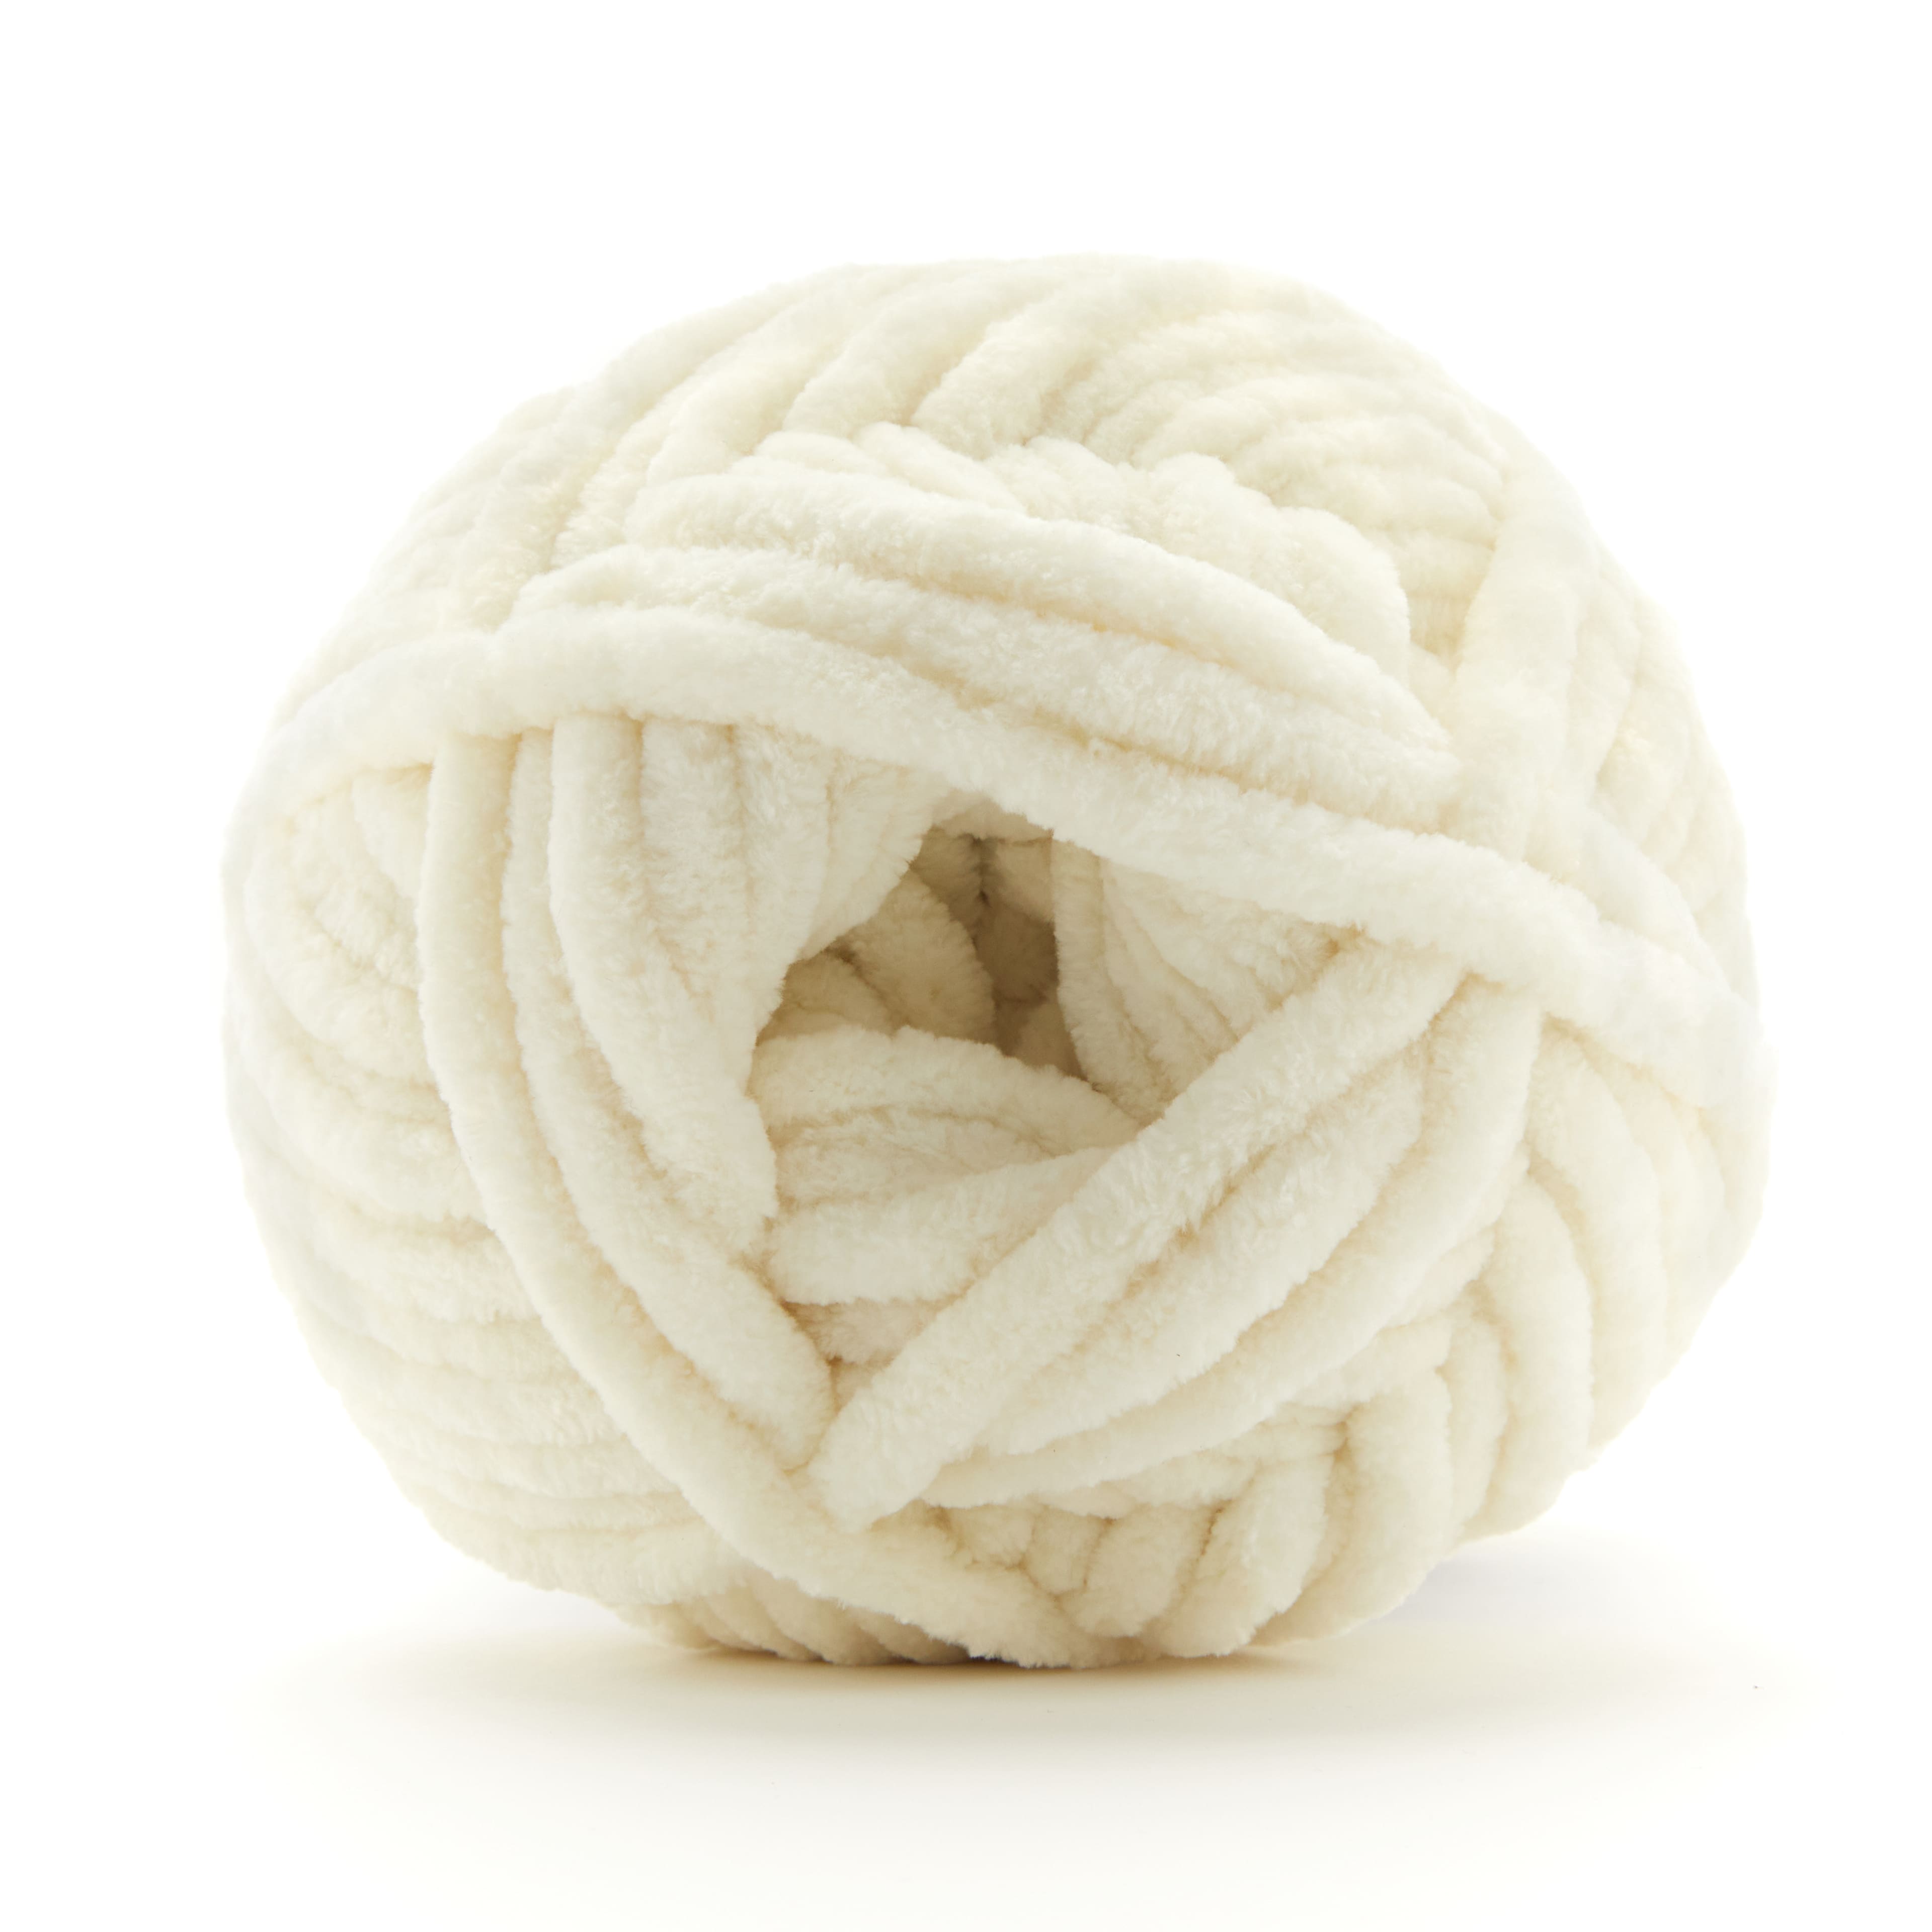 Loops & Threads Sweet Snuggles Lite Yarn - White - 9 oz